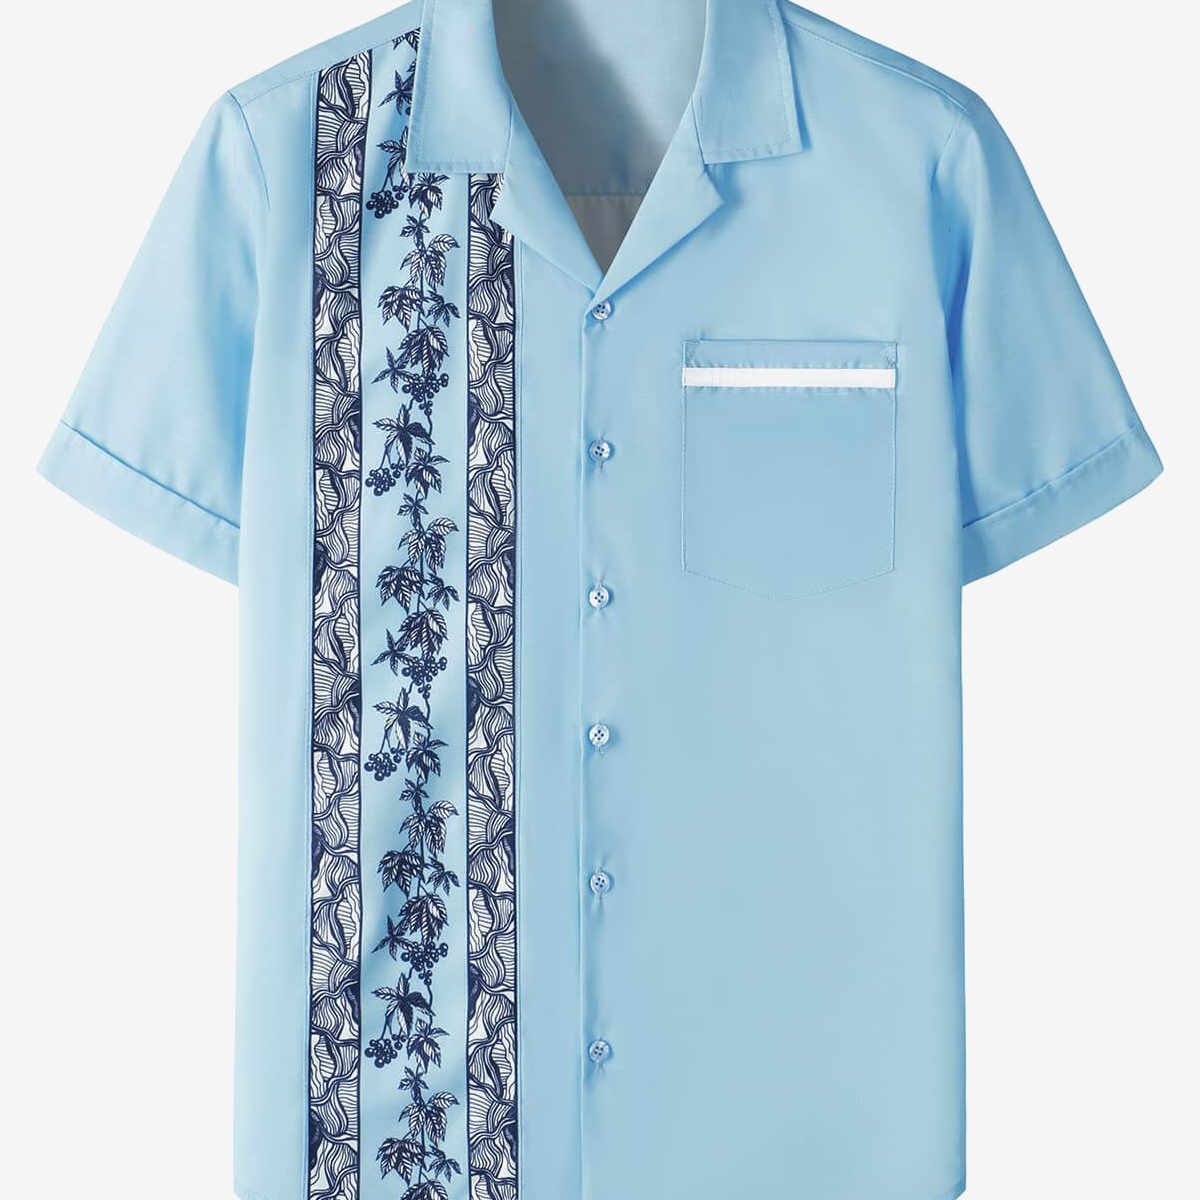 Camisa de manga corta azul claro con estampado floral de los años 50 estilo Rockabilly retro bolos verano playa